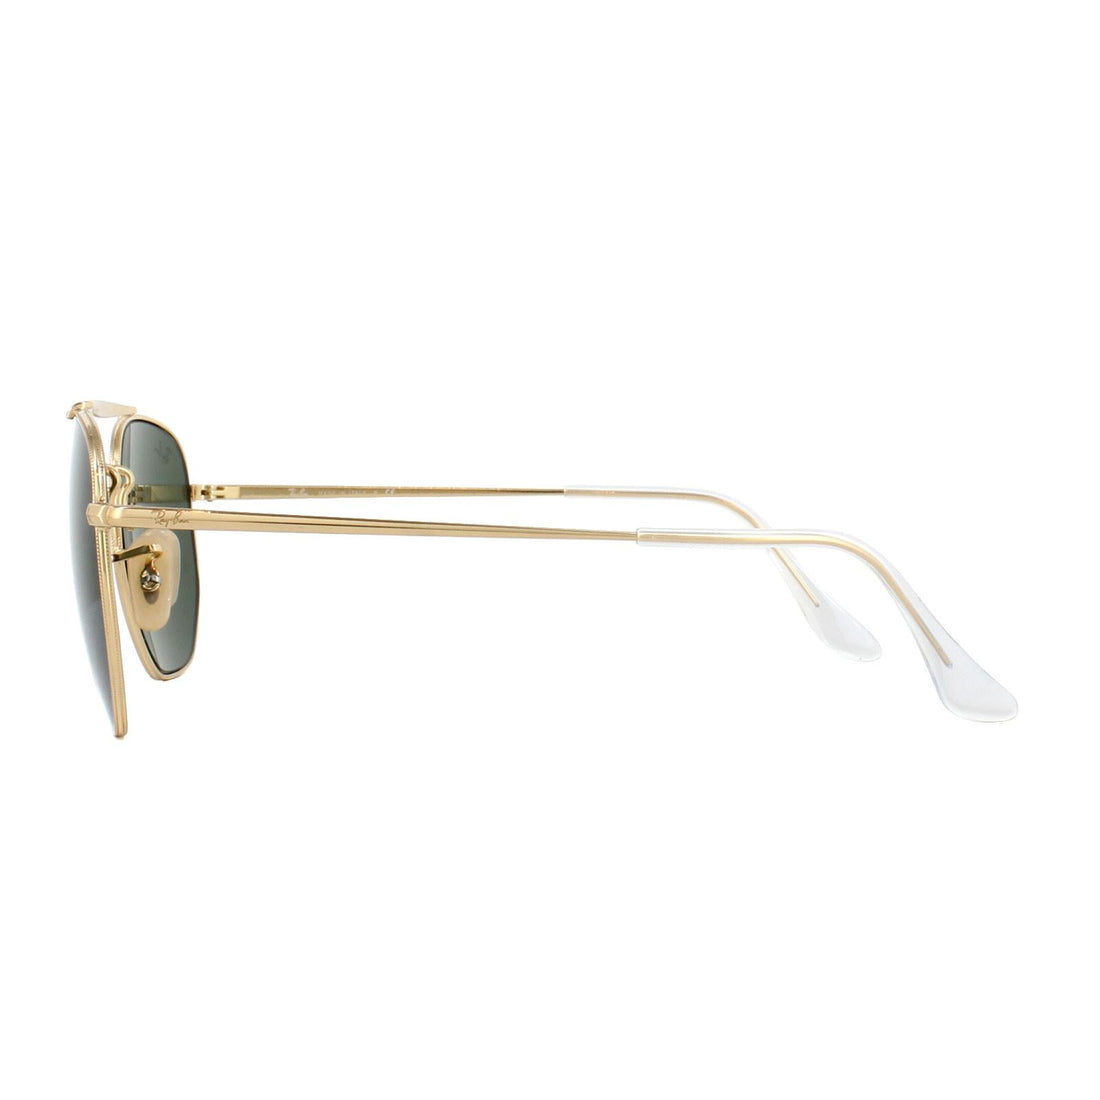 Ray-Ban Sunglasses Marshal 3648 001 Gold Green G-15